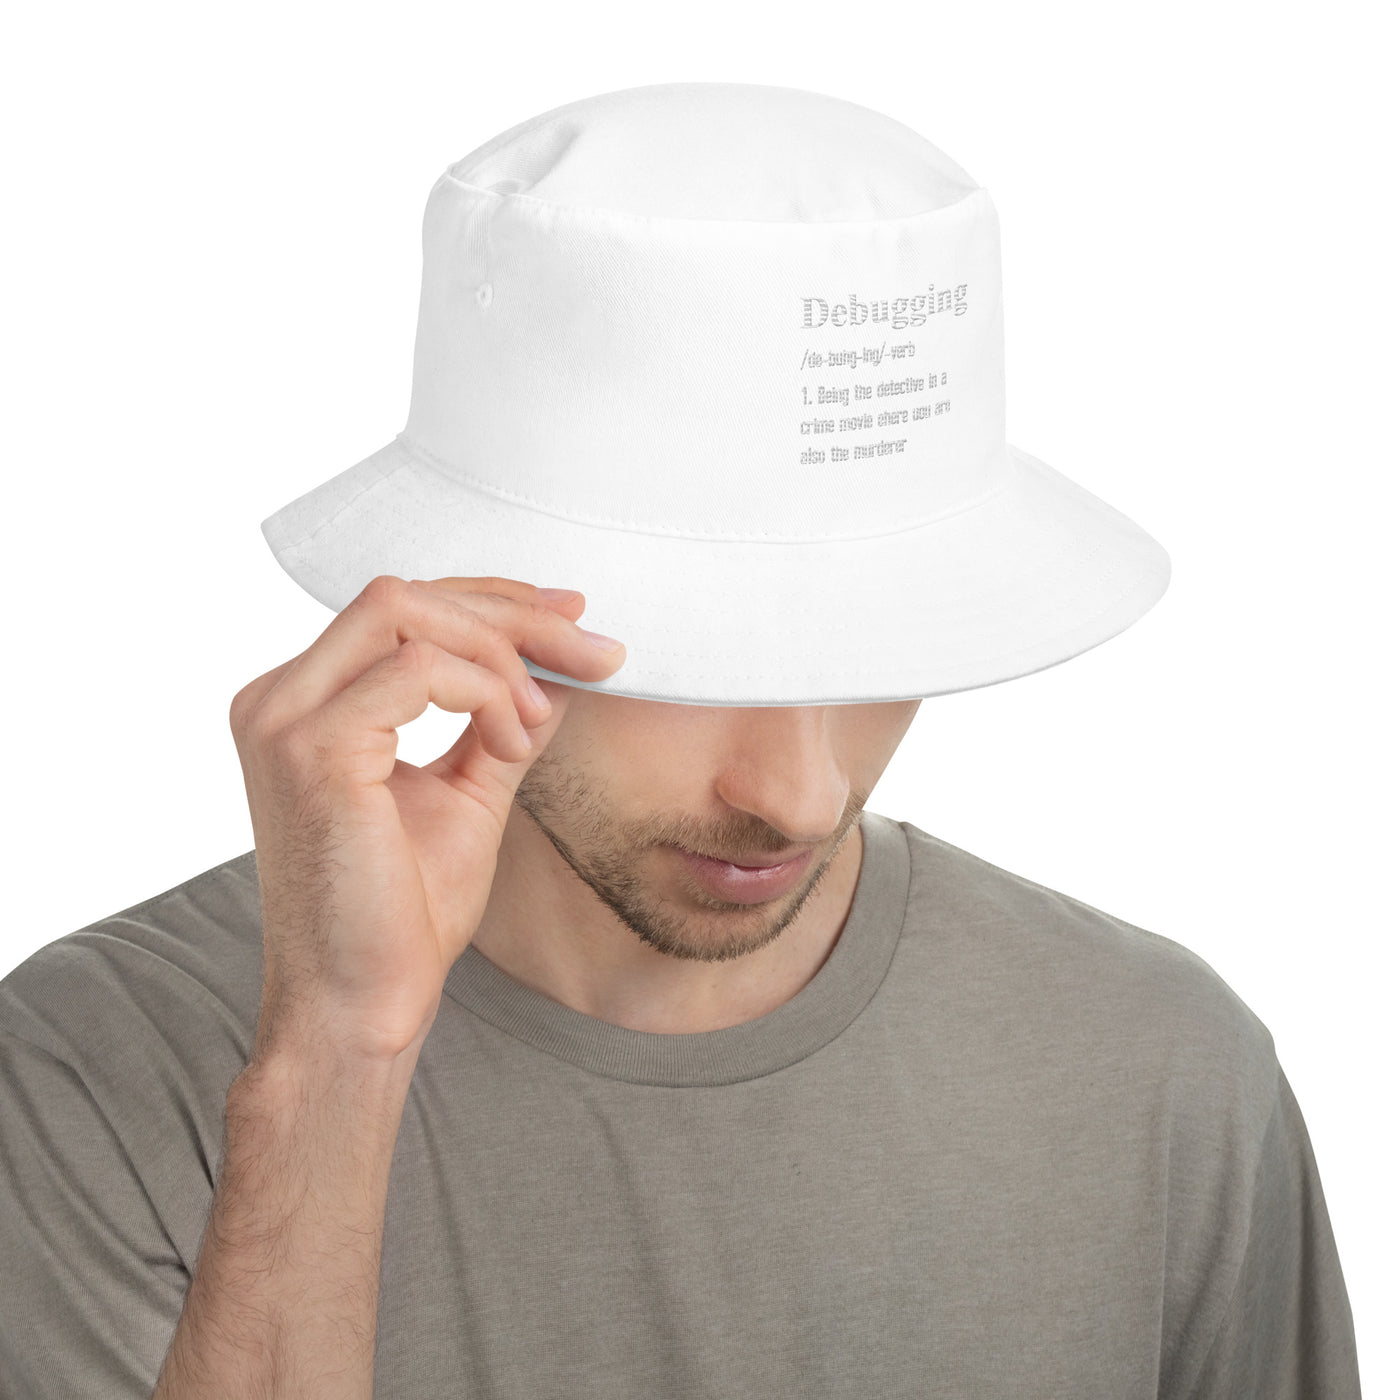 Debugging Definition V1 - Bucket Hat